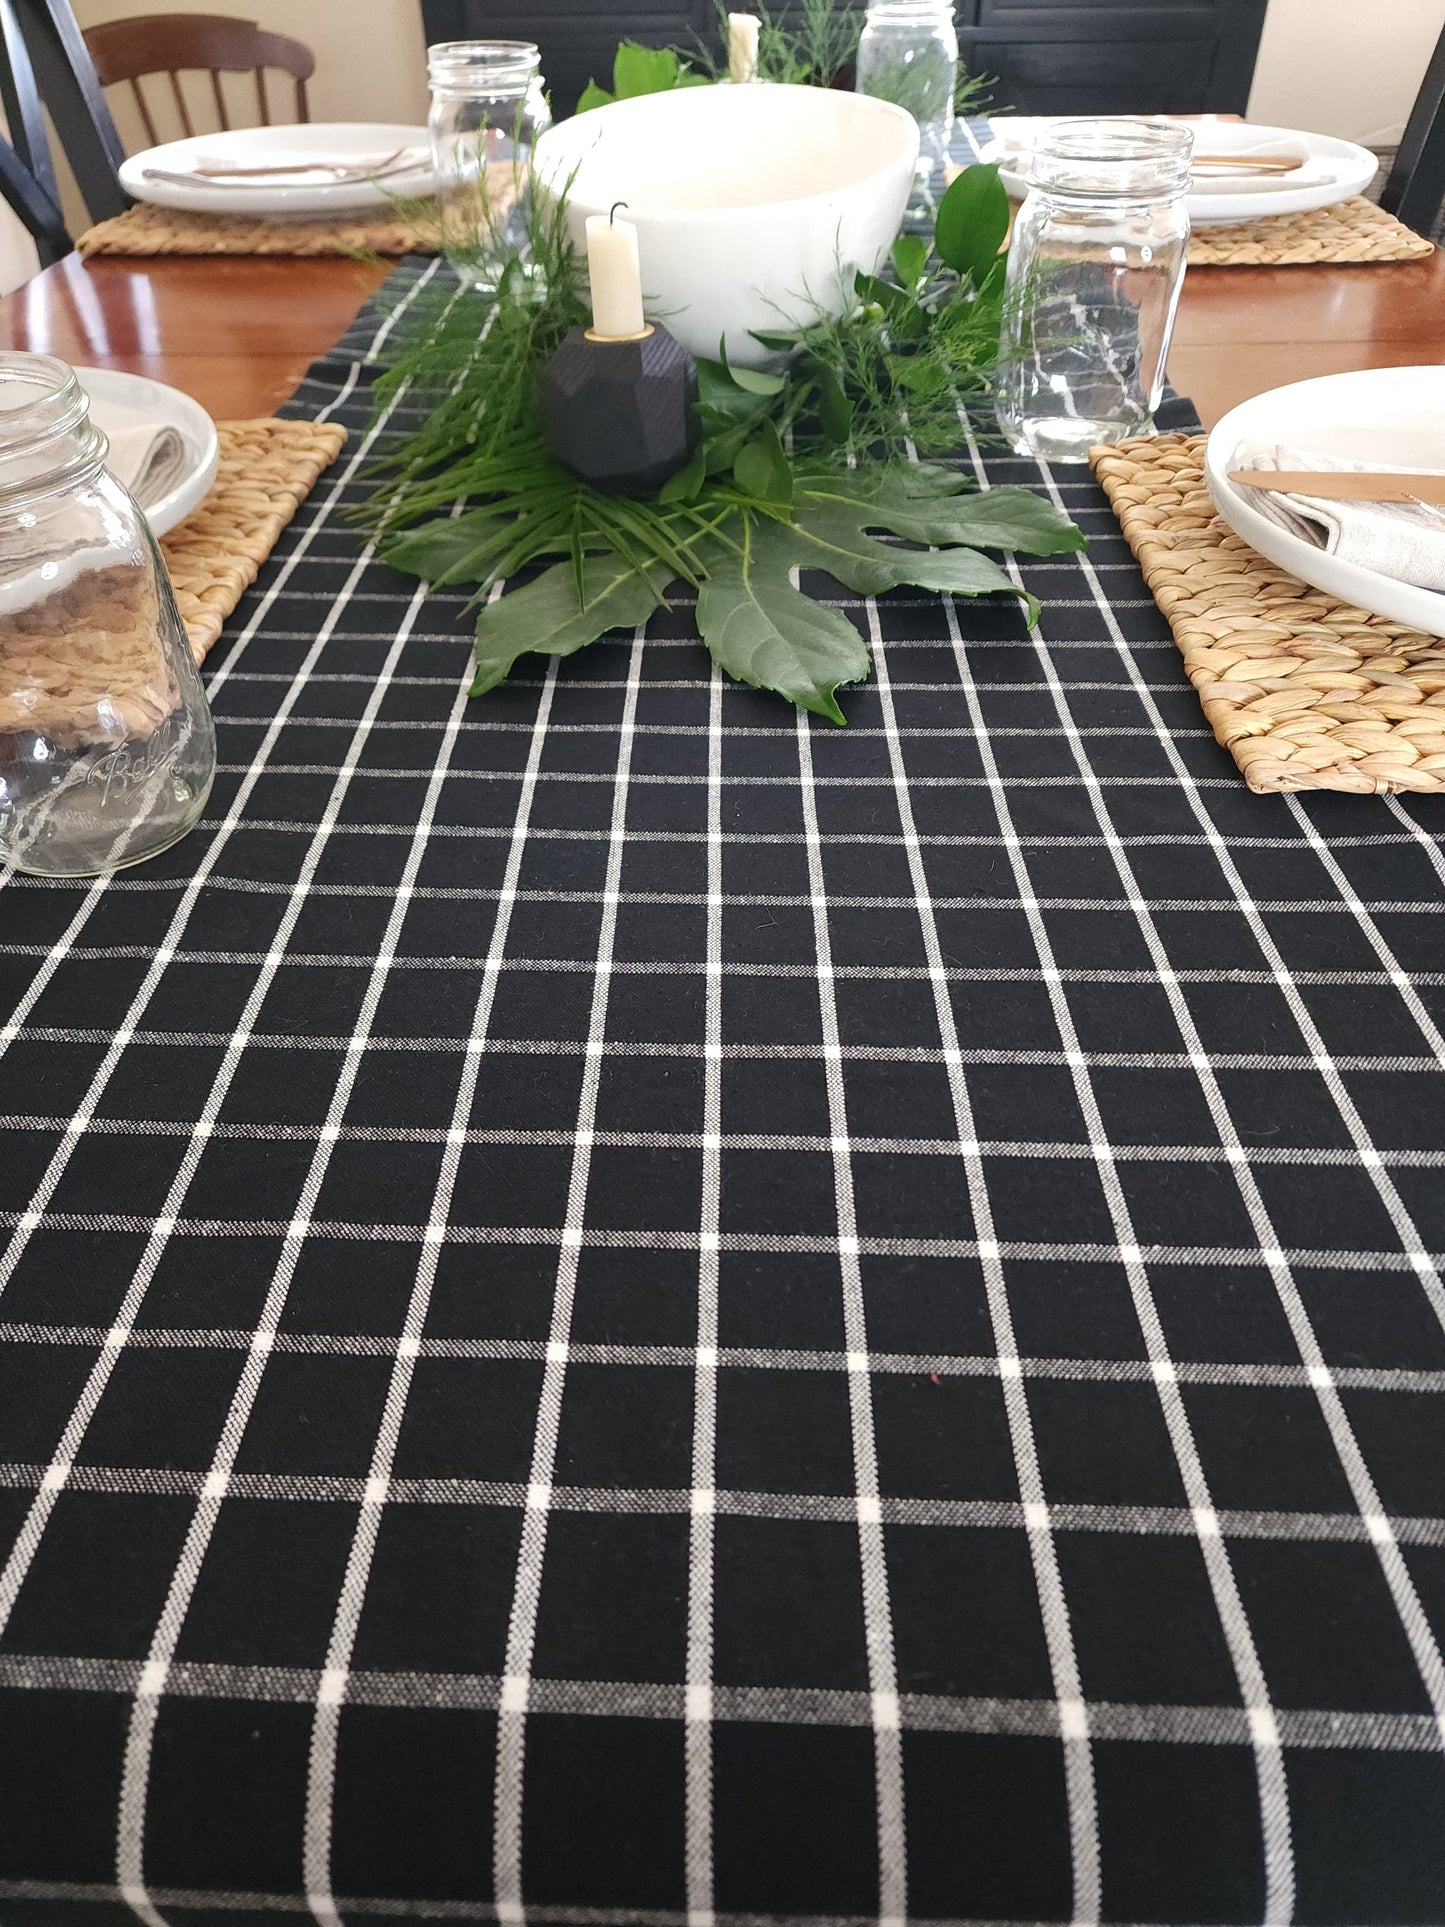 Black & White Checkered Table Runner